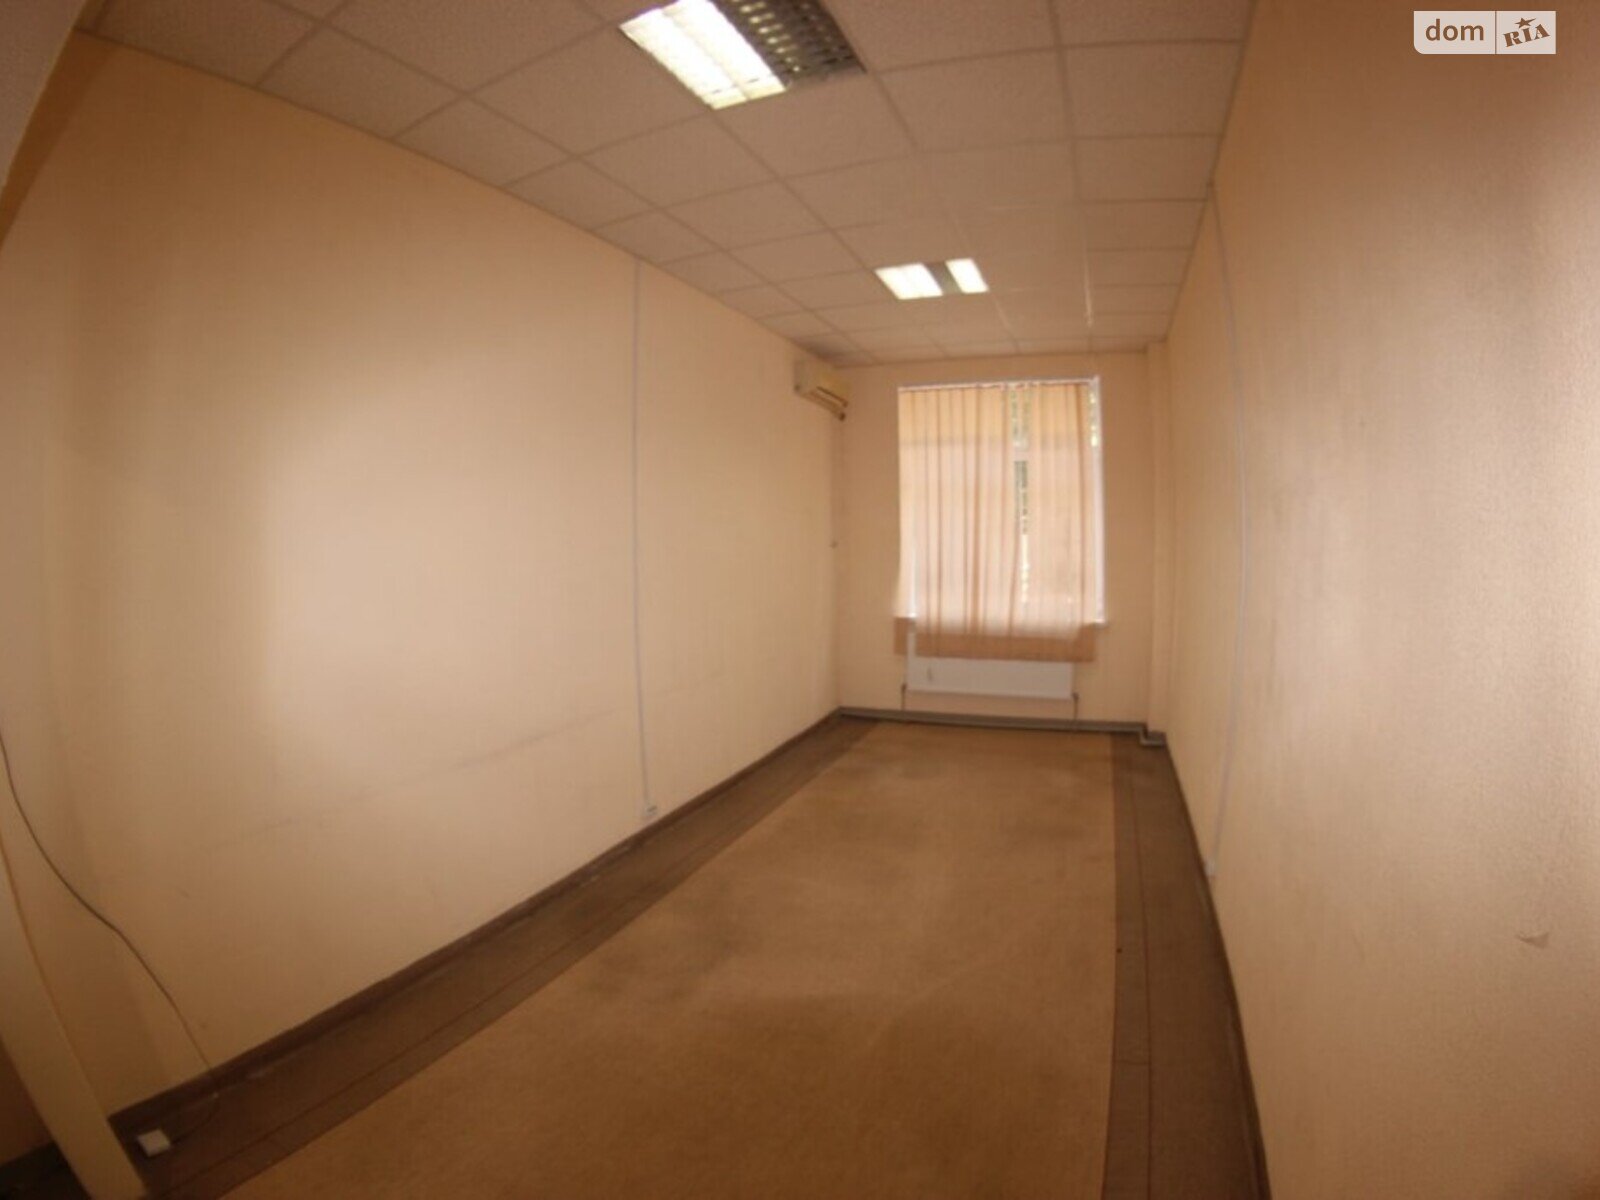 Оренда офісного приміщення в Дніпрі, Ольги княгині вулиця 22, приміщень - 2, поверх - 1 фото 1